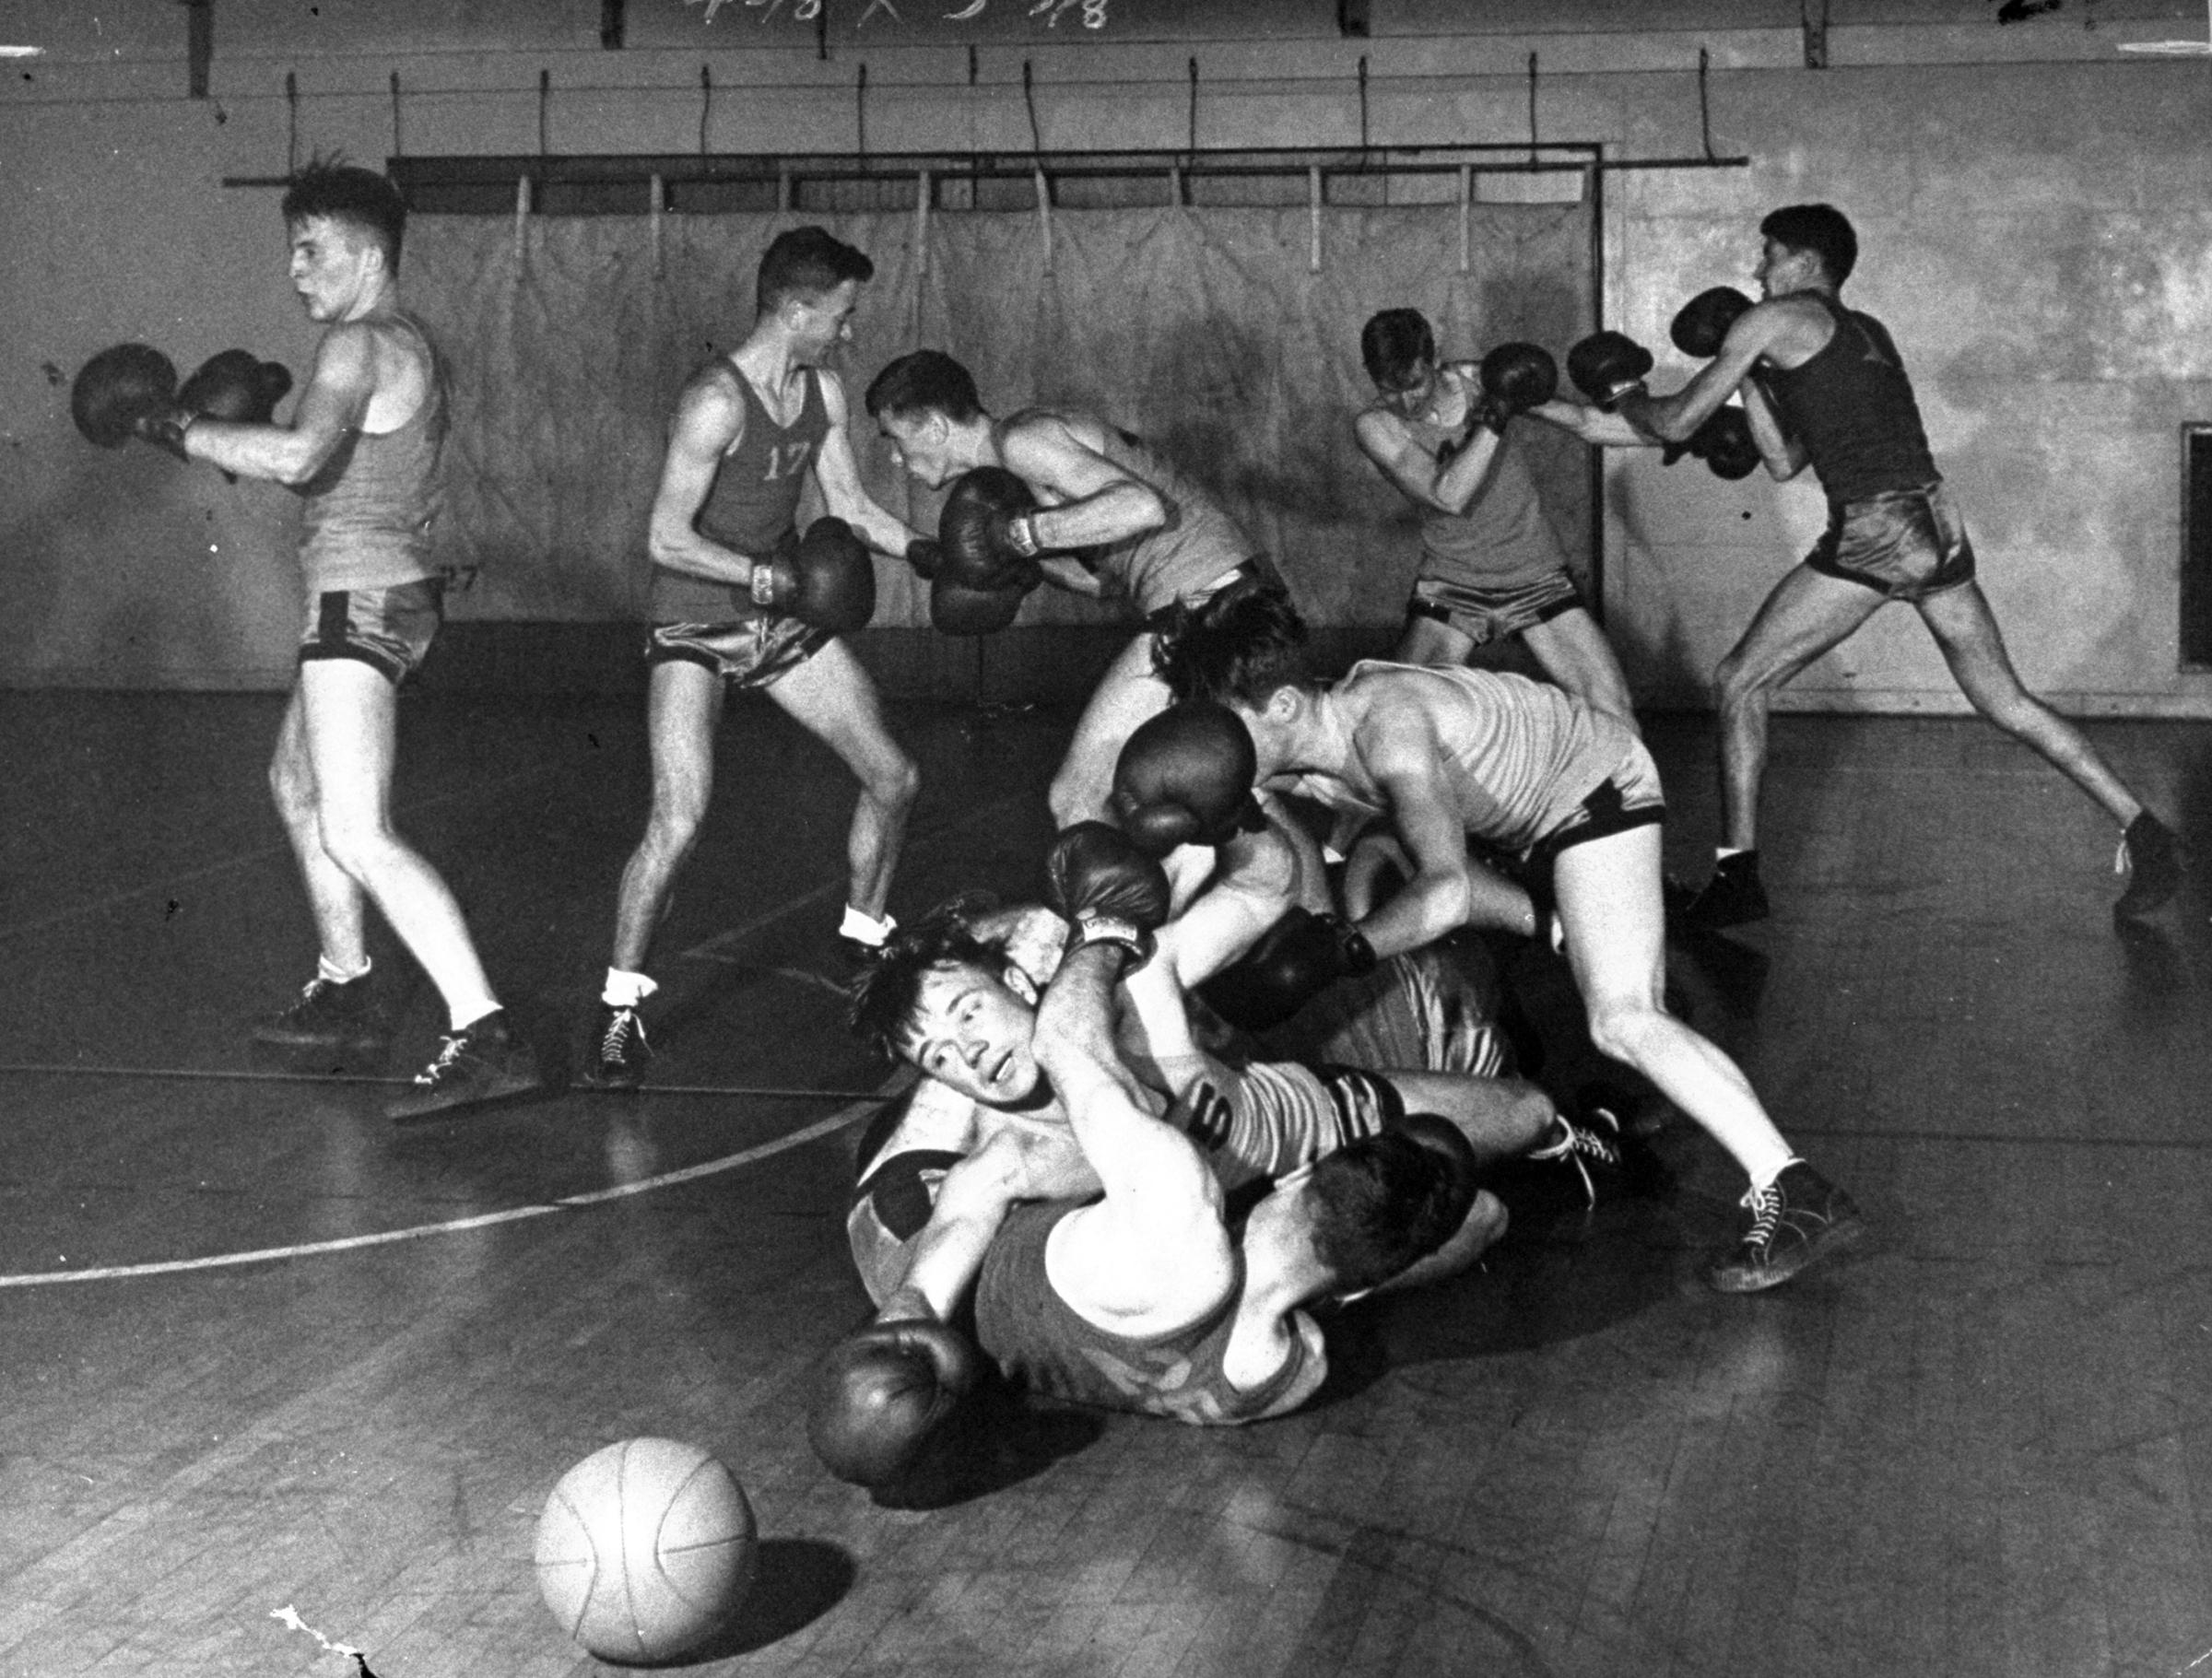 Mixing basketball and boxing at UCLA, 1945.